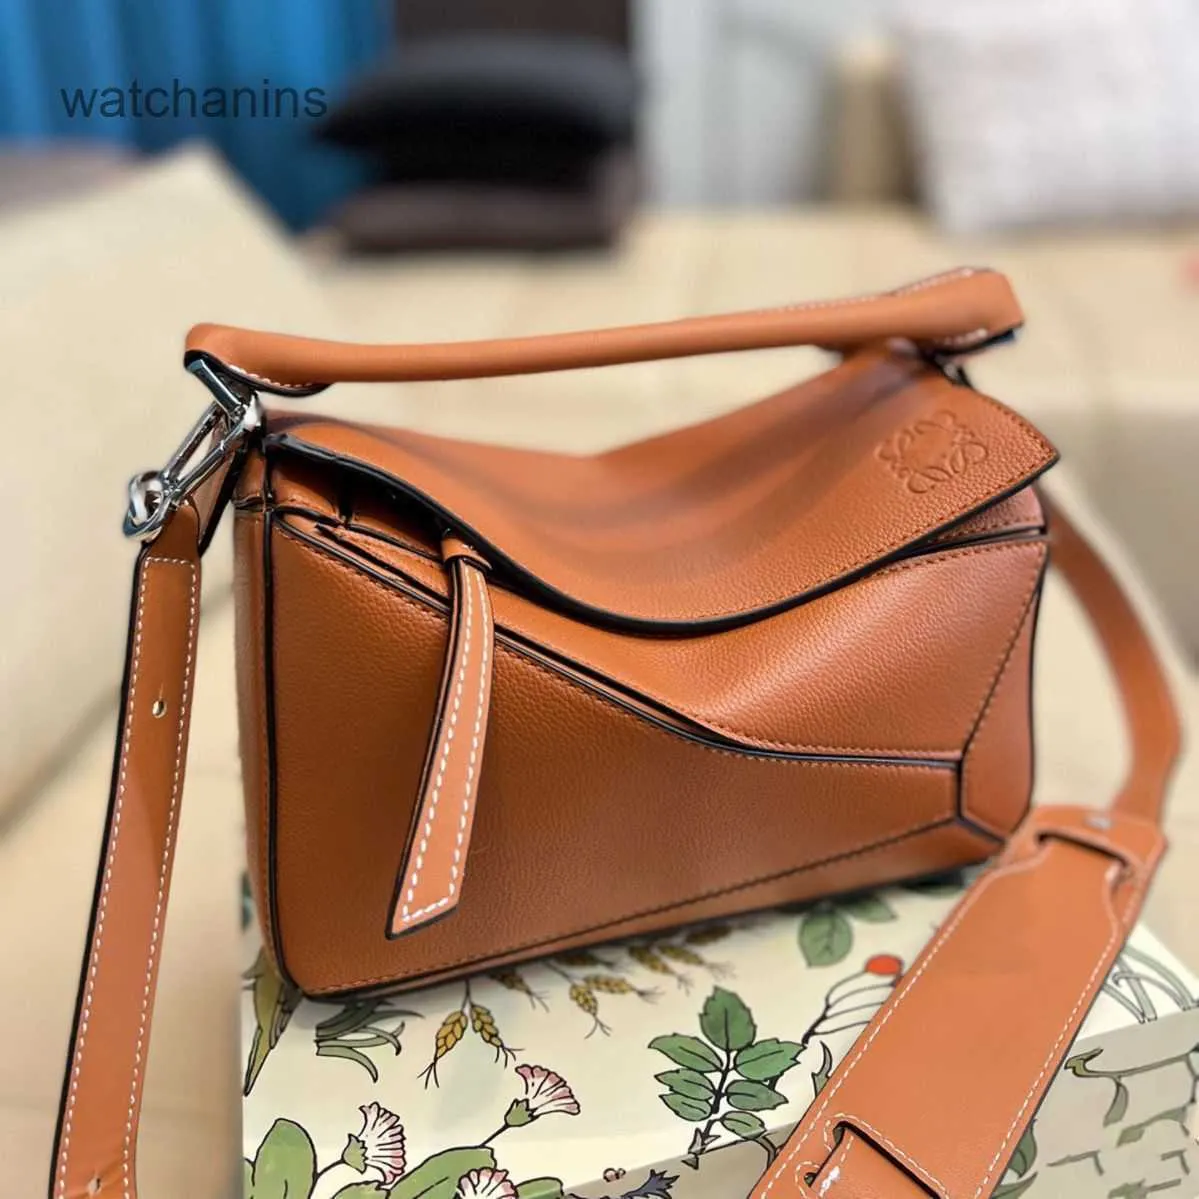 Gucci bag | Gucci handbags outlet, Gucci bag, Cheap designer bags